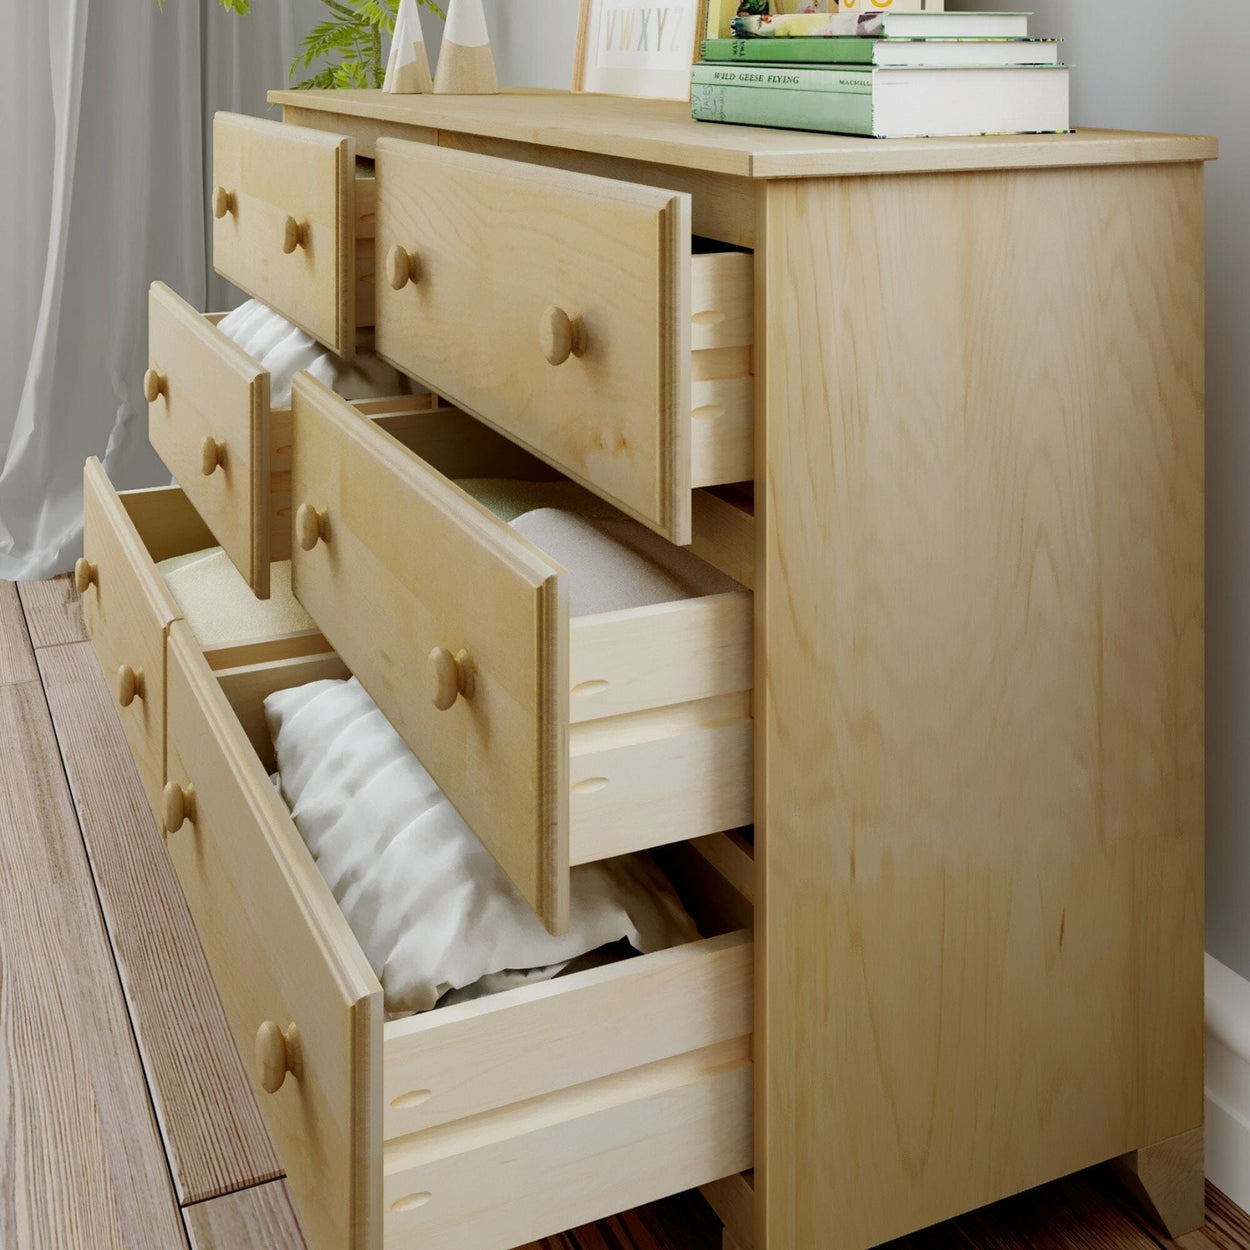 180016-001 : Furniture 6-Drawer Dresser, Natural